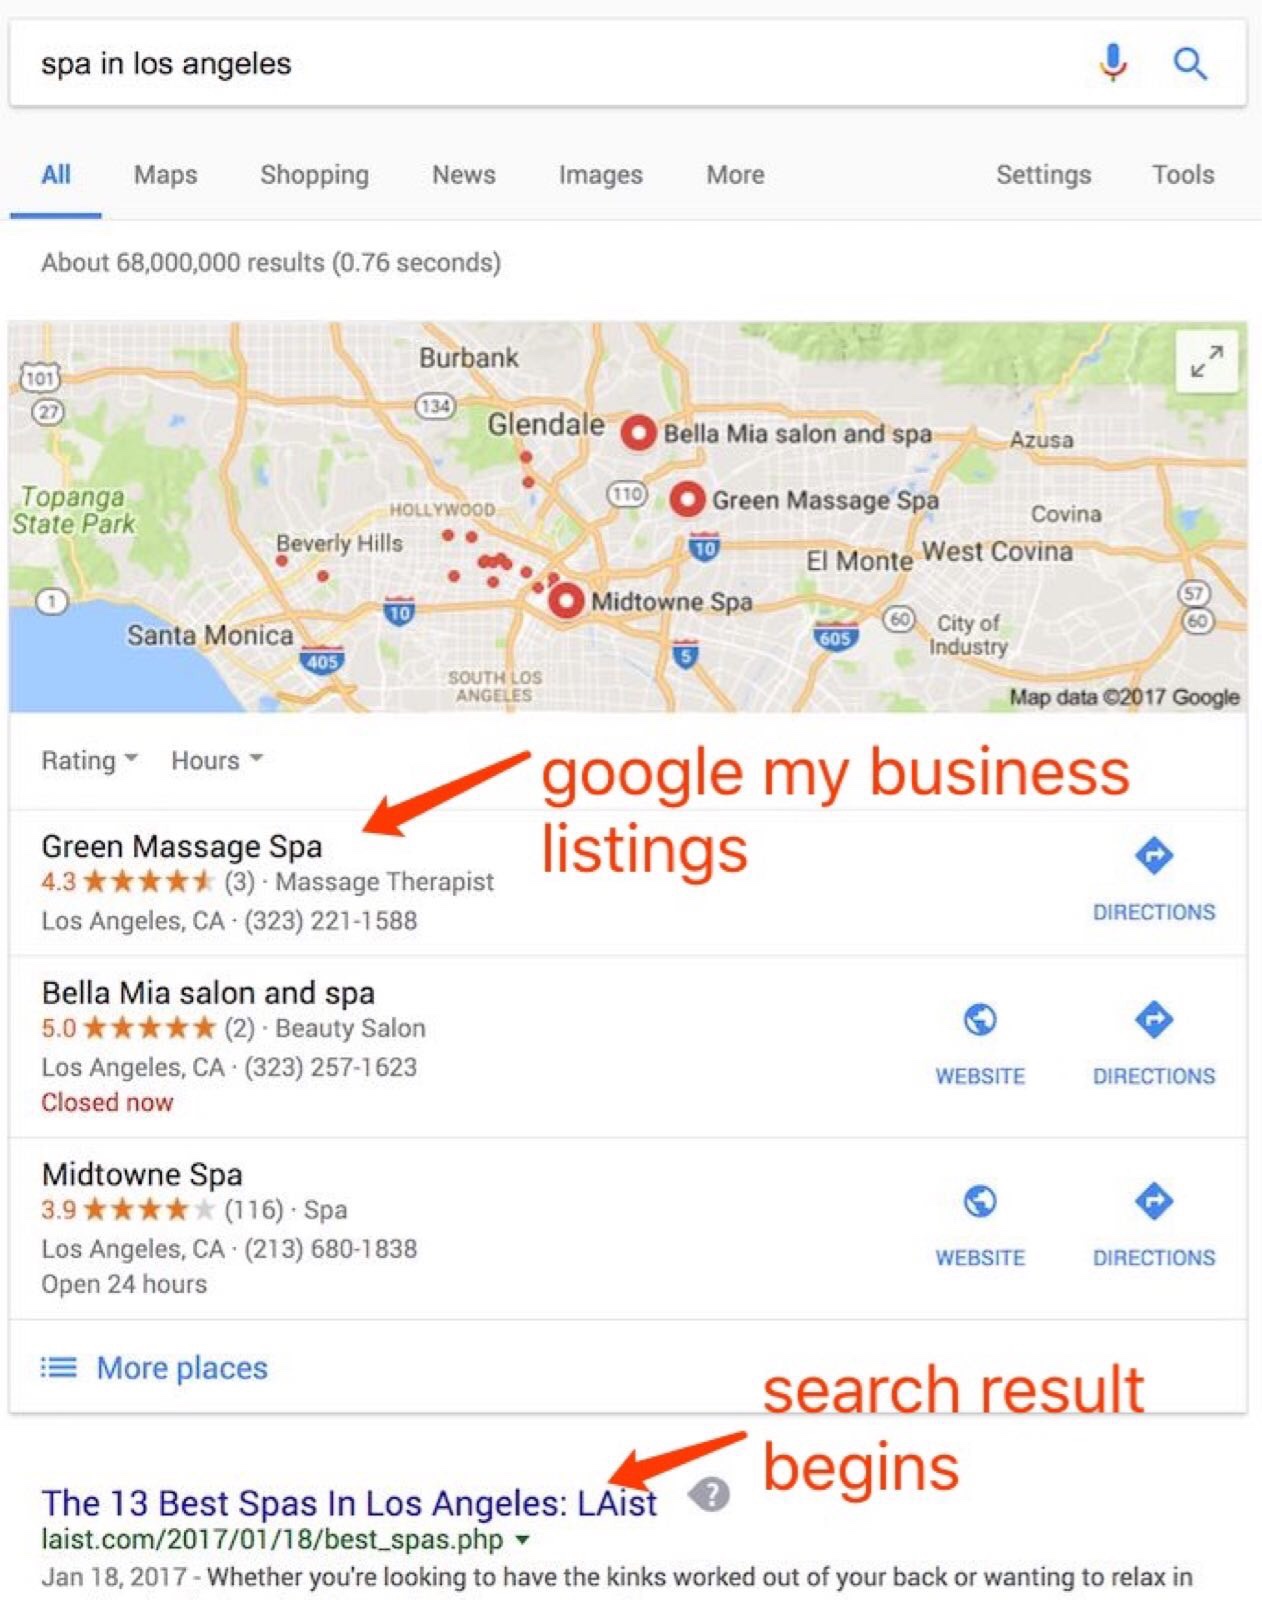 Когда человек ищет в своем мобильном телефоне информацию о компаниях, компании со страницей Google Мой бизнес имеют приоритет в результатах поиска